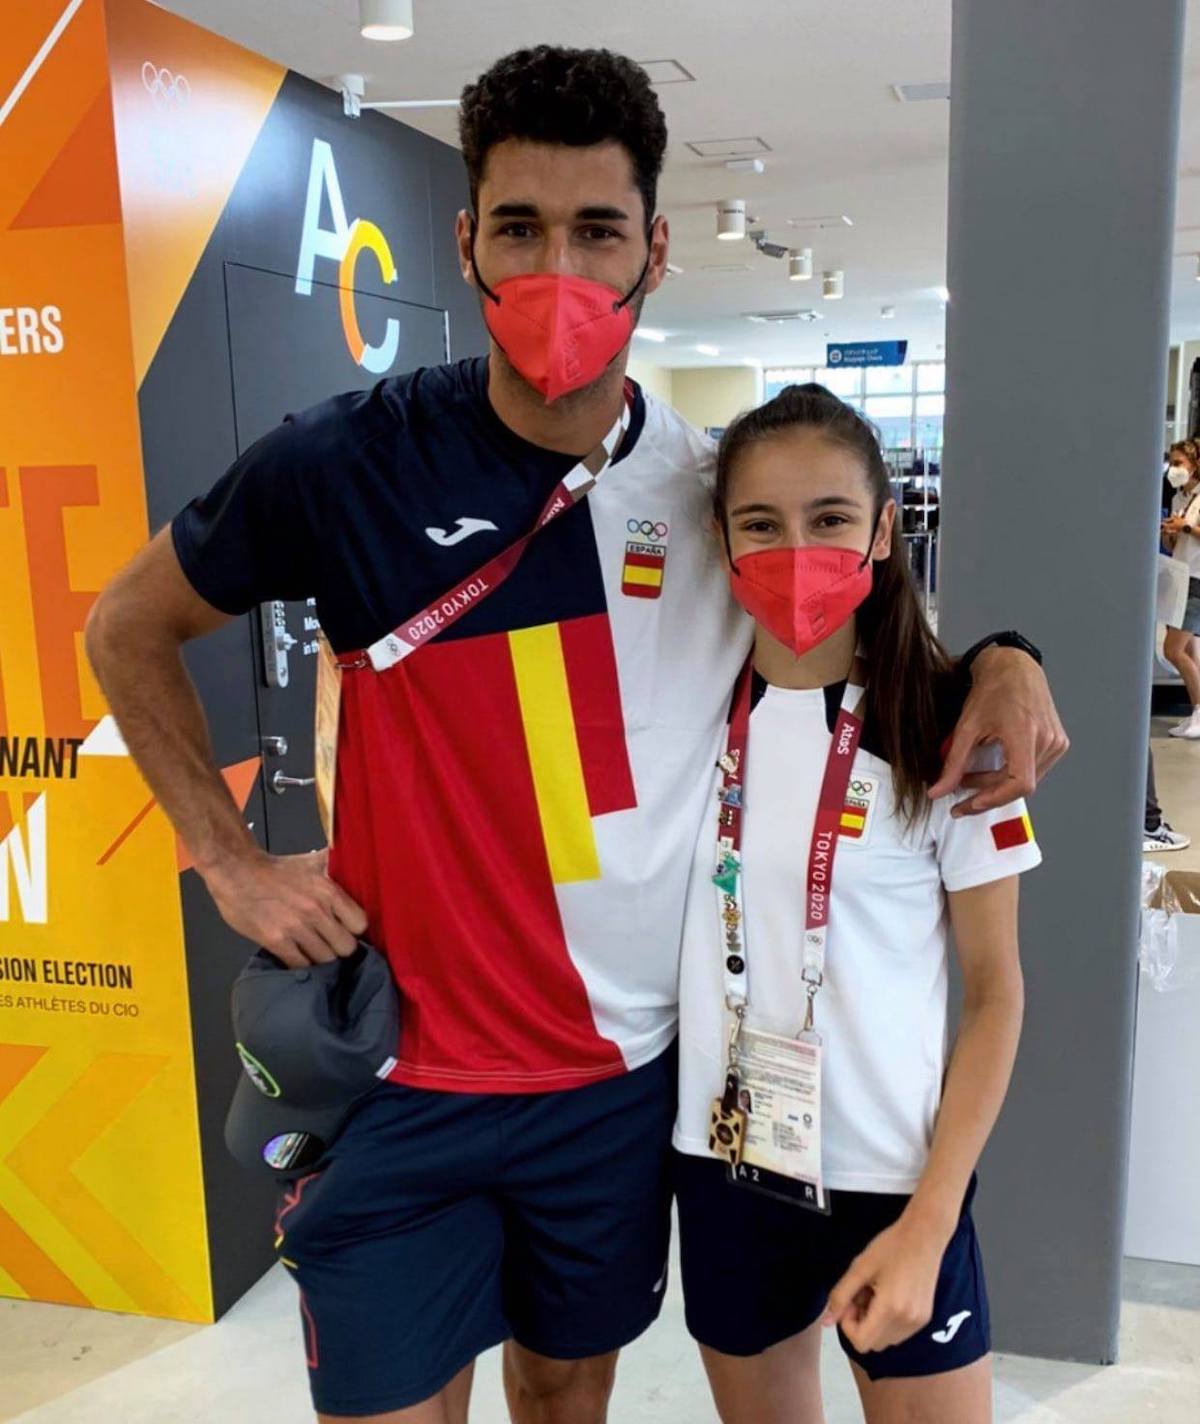 El 🏃🏻 olímpico palmero, Samuel García, nos regala desde 🏯 Tokio una foto con la primera medallista española 🥇 Adriana Cerezo 🇪🇸